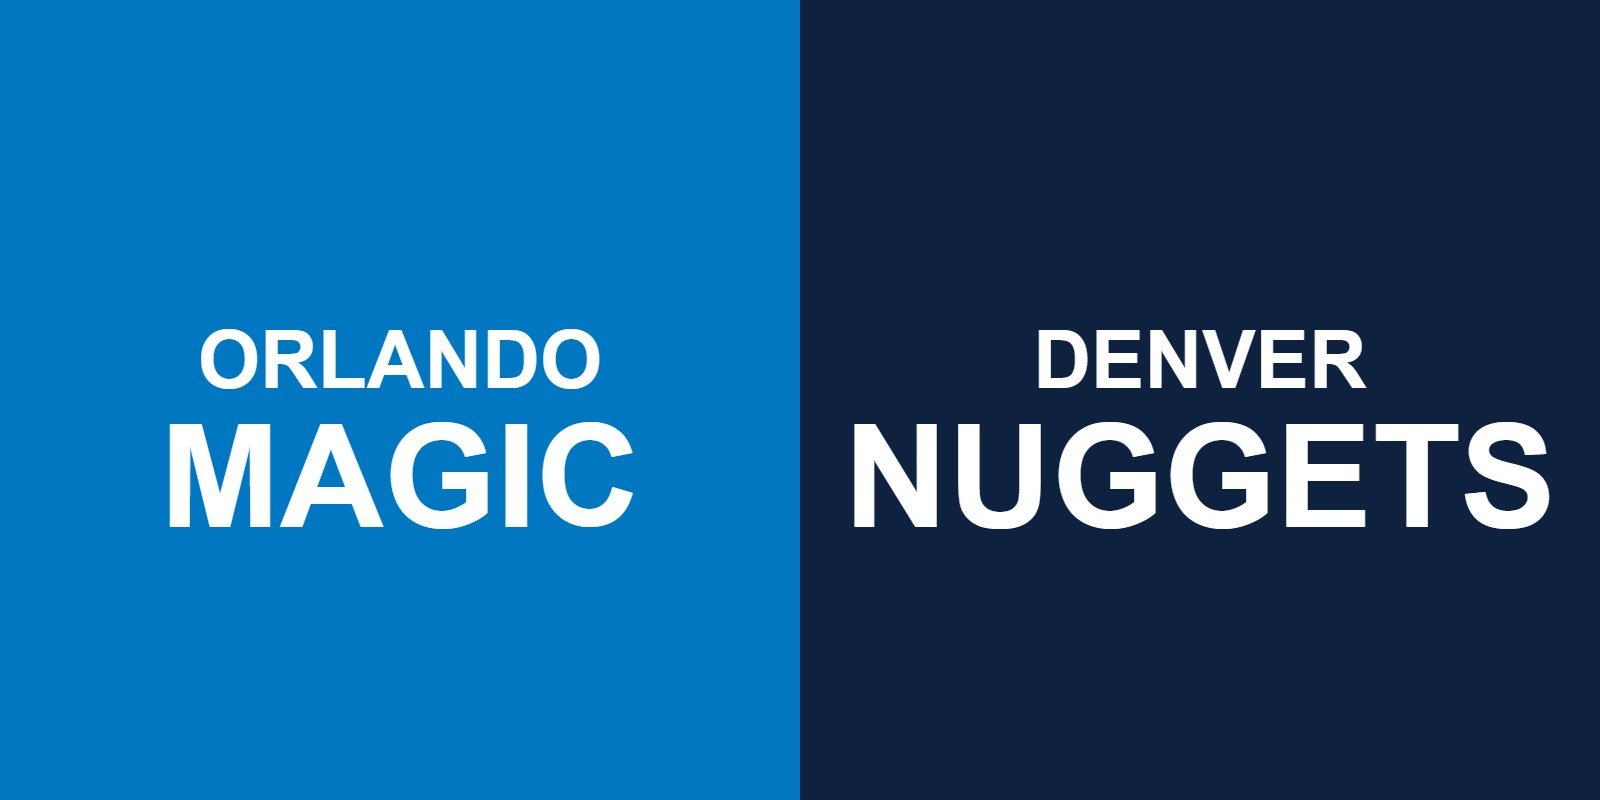 Magic vs Nuggets